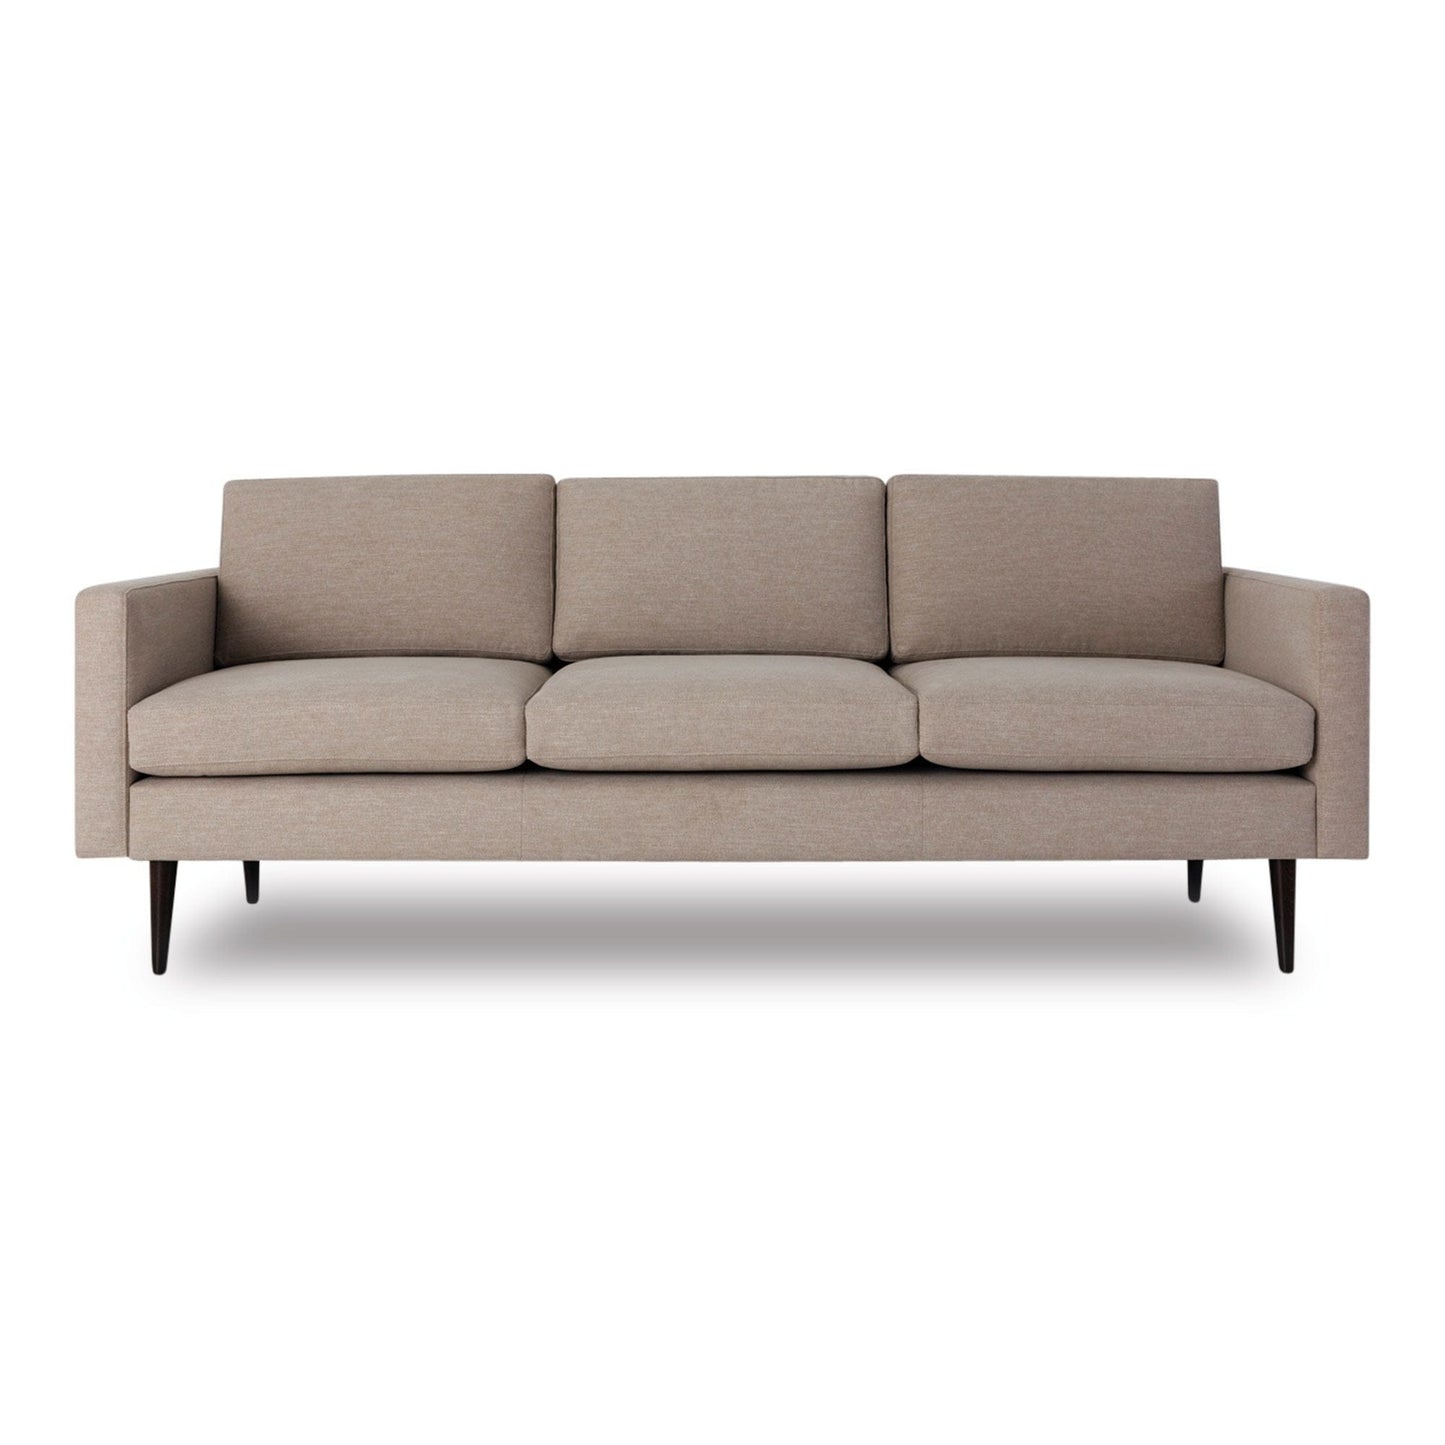 Model 01 Linen 3 Seater Sofa